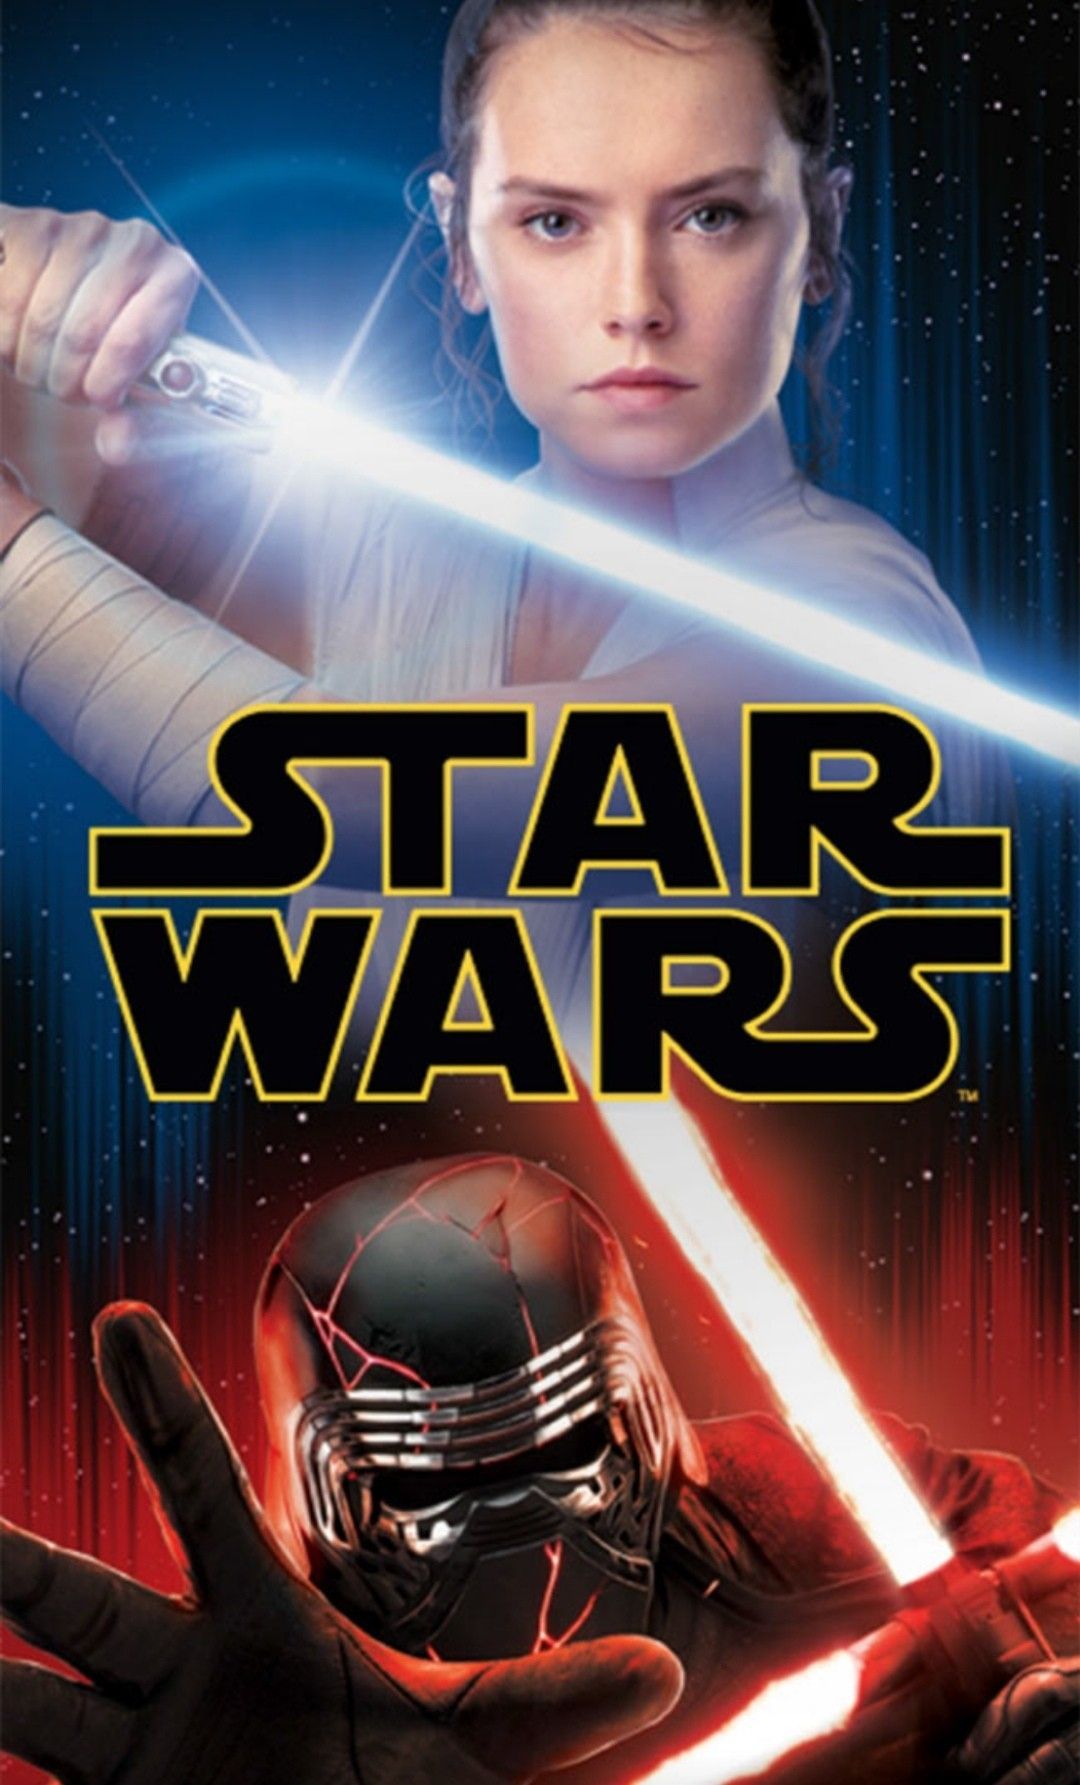 Star Wars #starwars. Star wars poster art, Star wars image, Star wars sequel trilogy